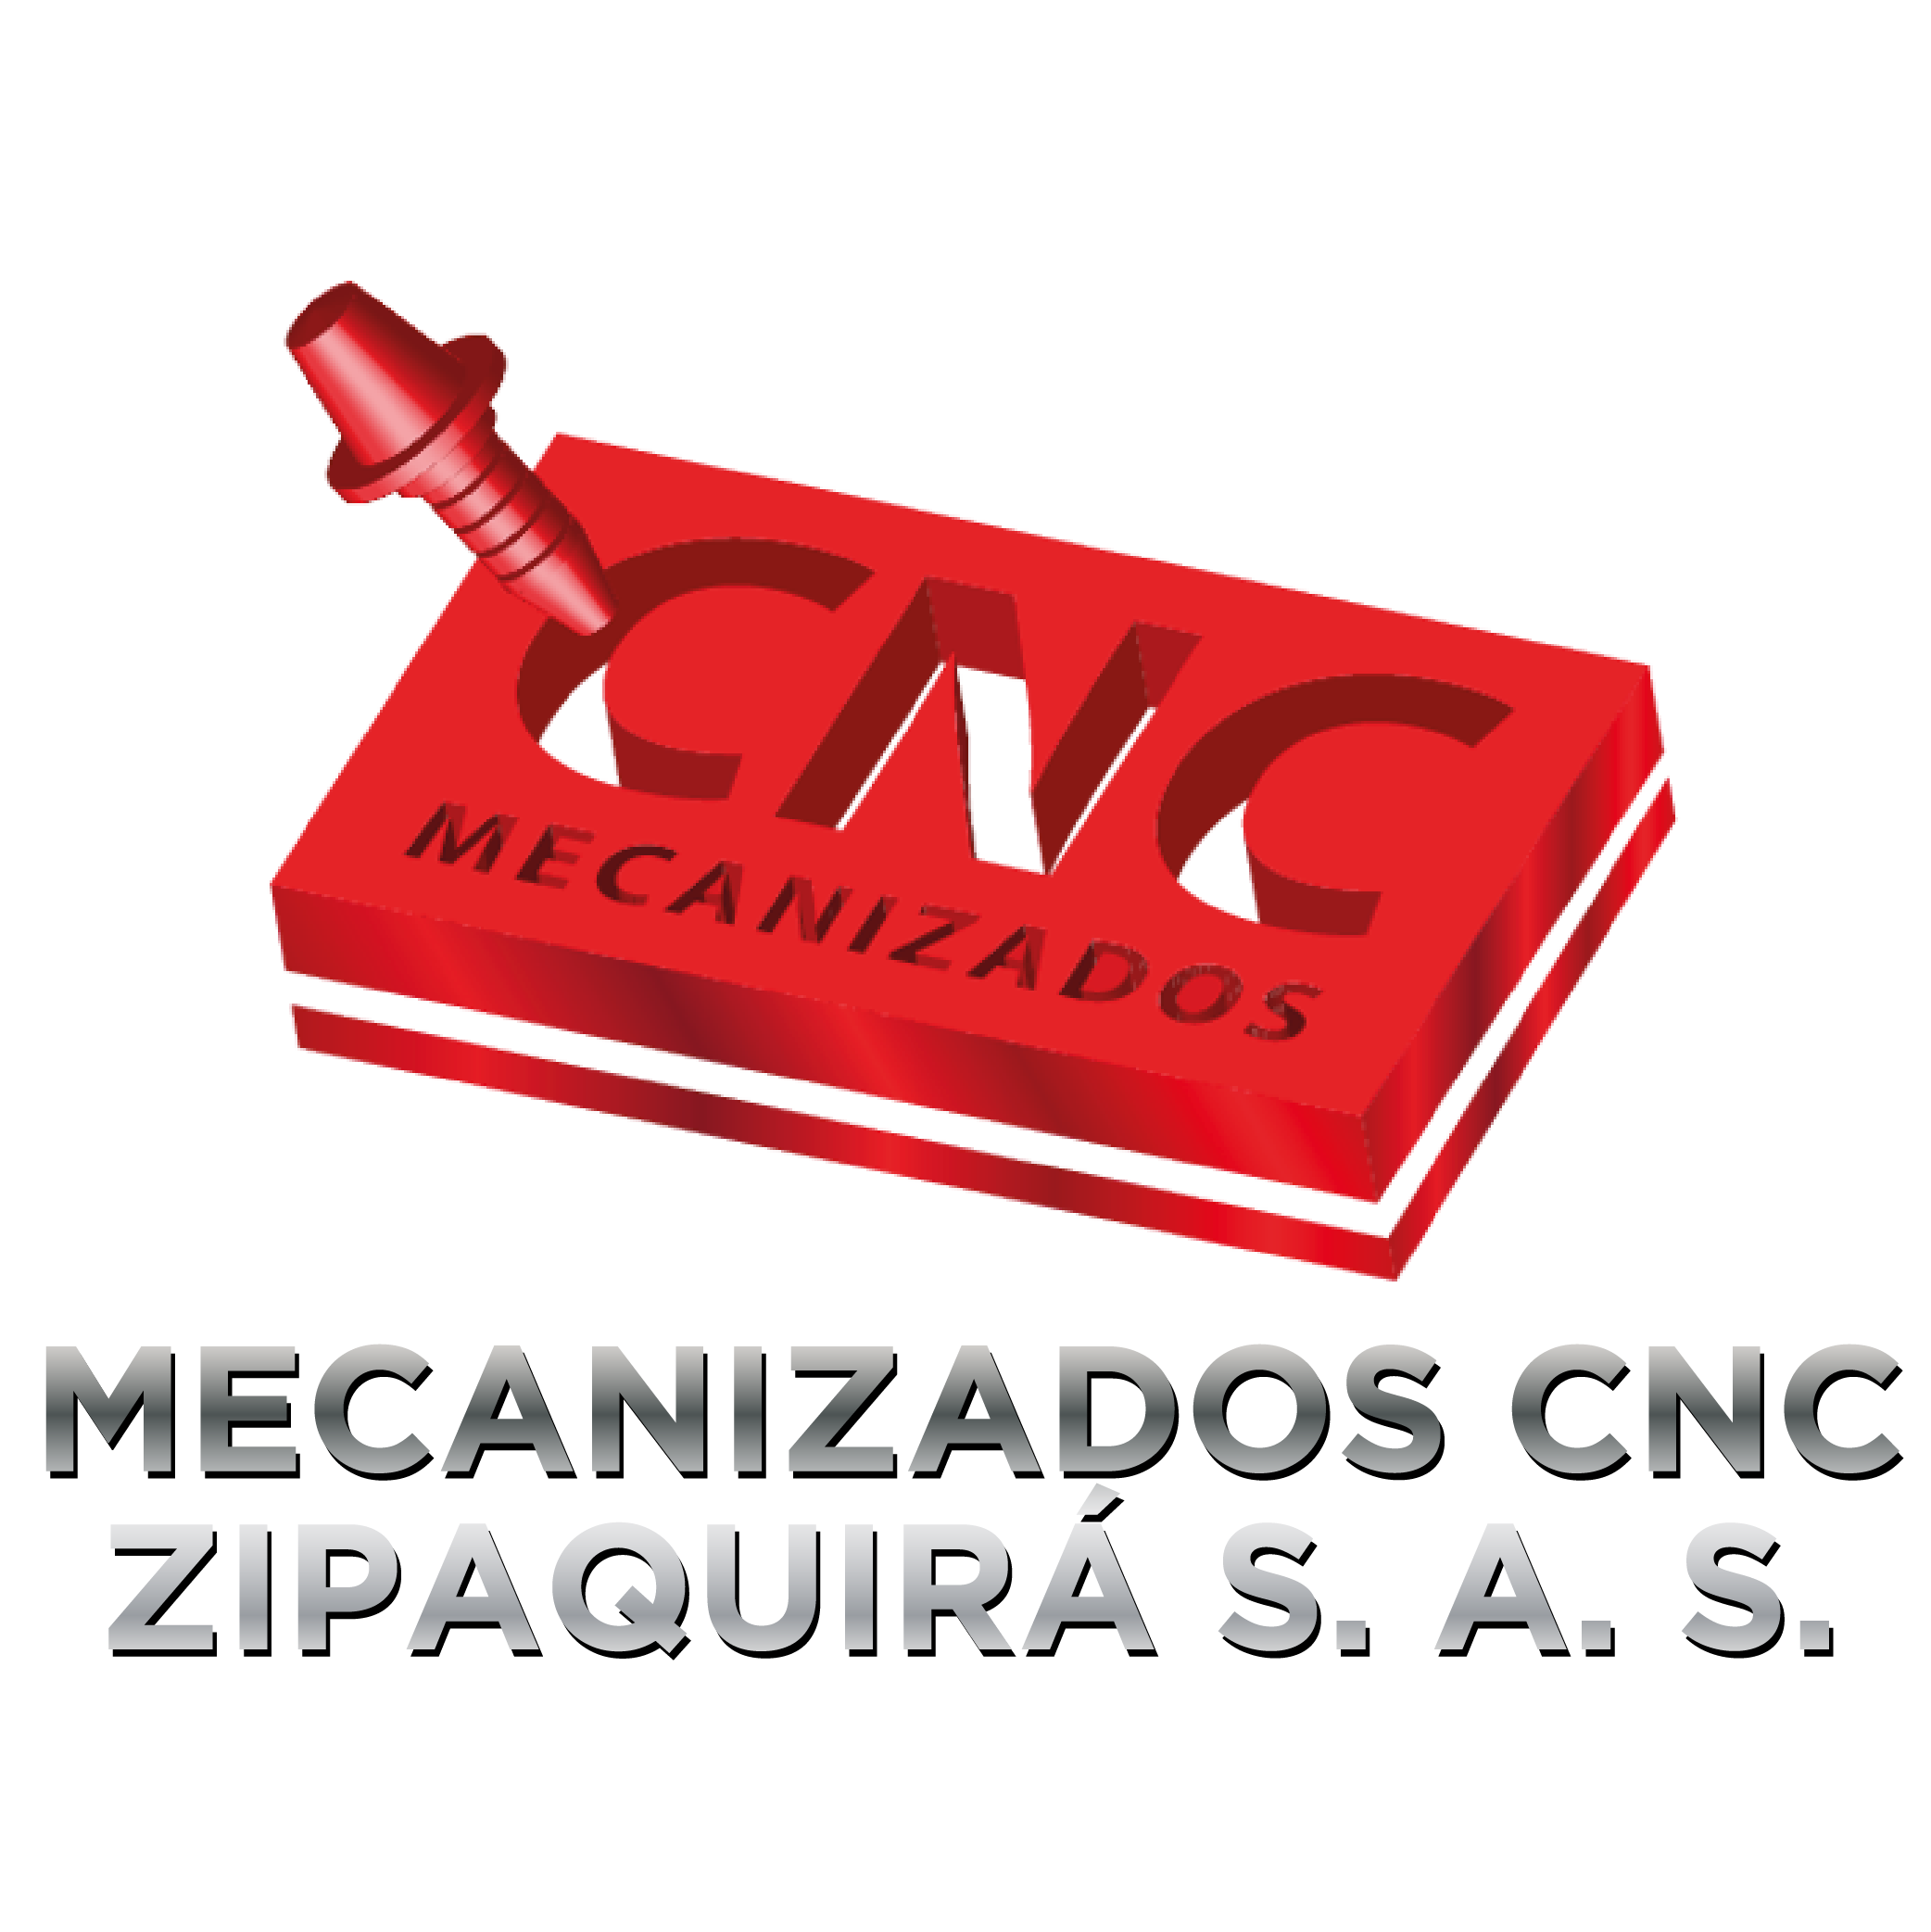 Mecanizados CNC Zipaquira